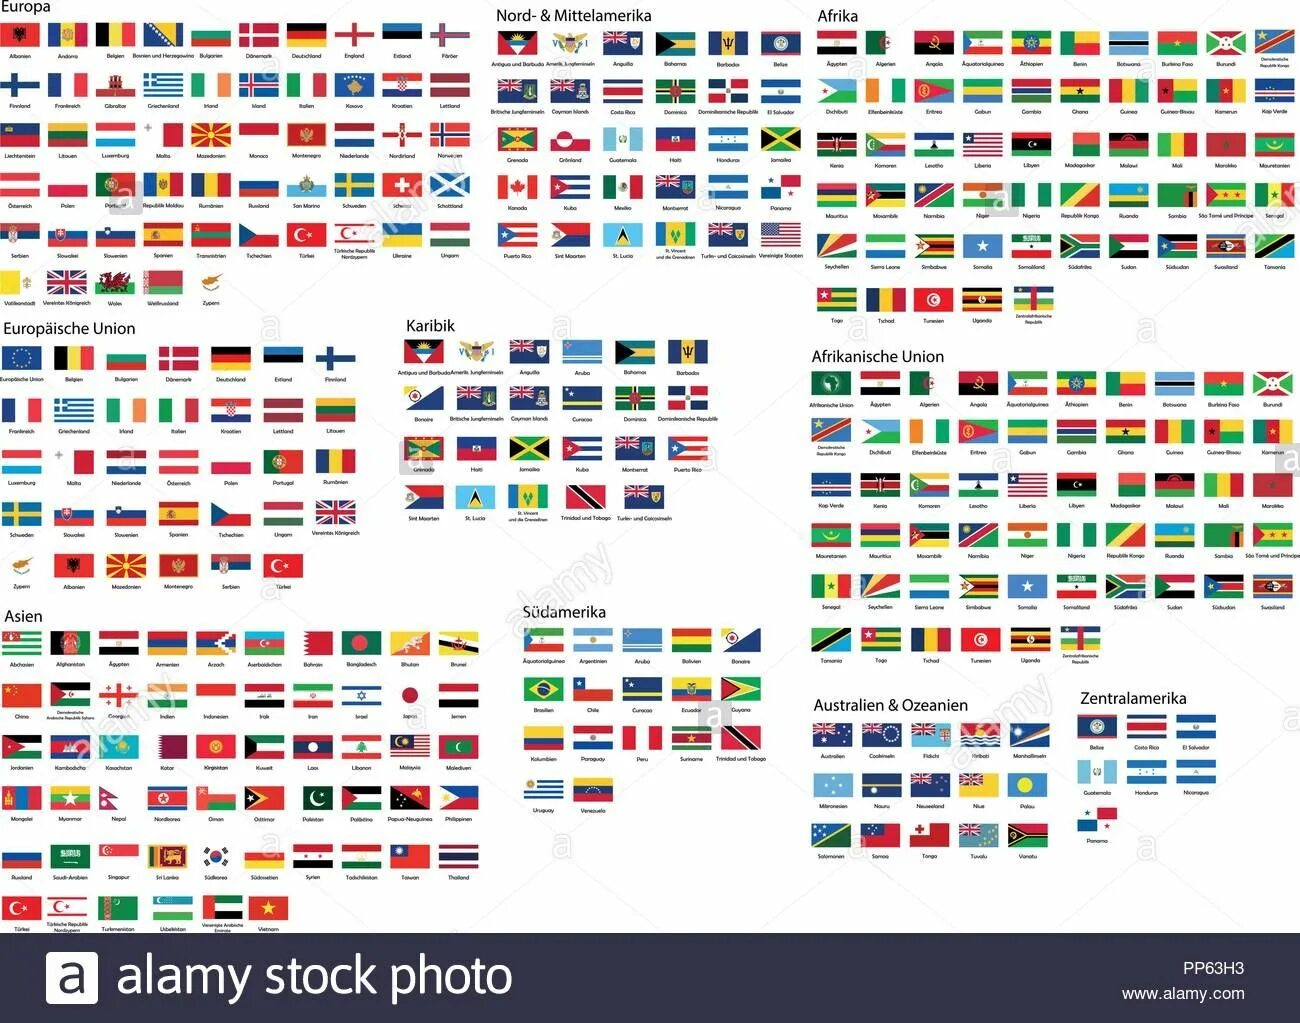 Все флаги стран и их названия на русском языке. Флаги всех государств.